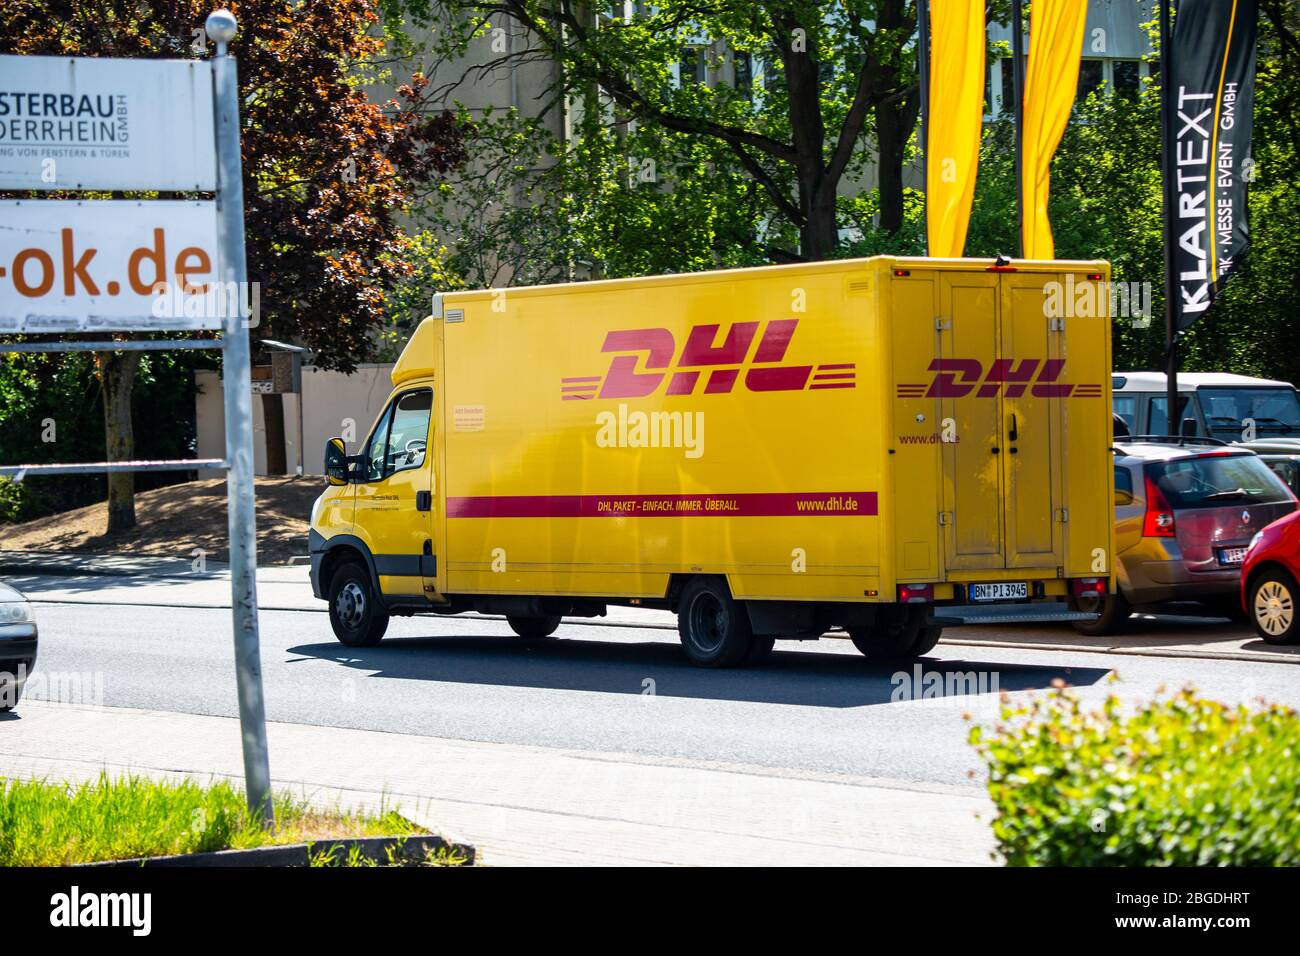 EIn Fahrzeug des Paketdienstleisters DHL liefert im Willicher Industriegebiet Pakete. Aktuell ist DHL wegen der Corona-Krise stark belastet. Stock Photo